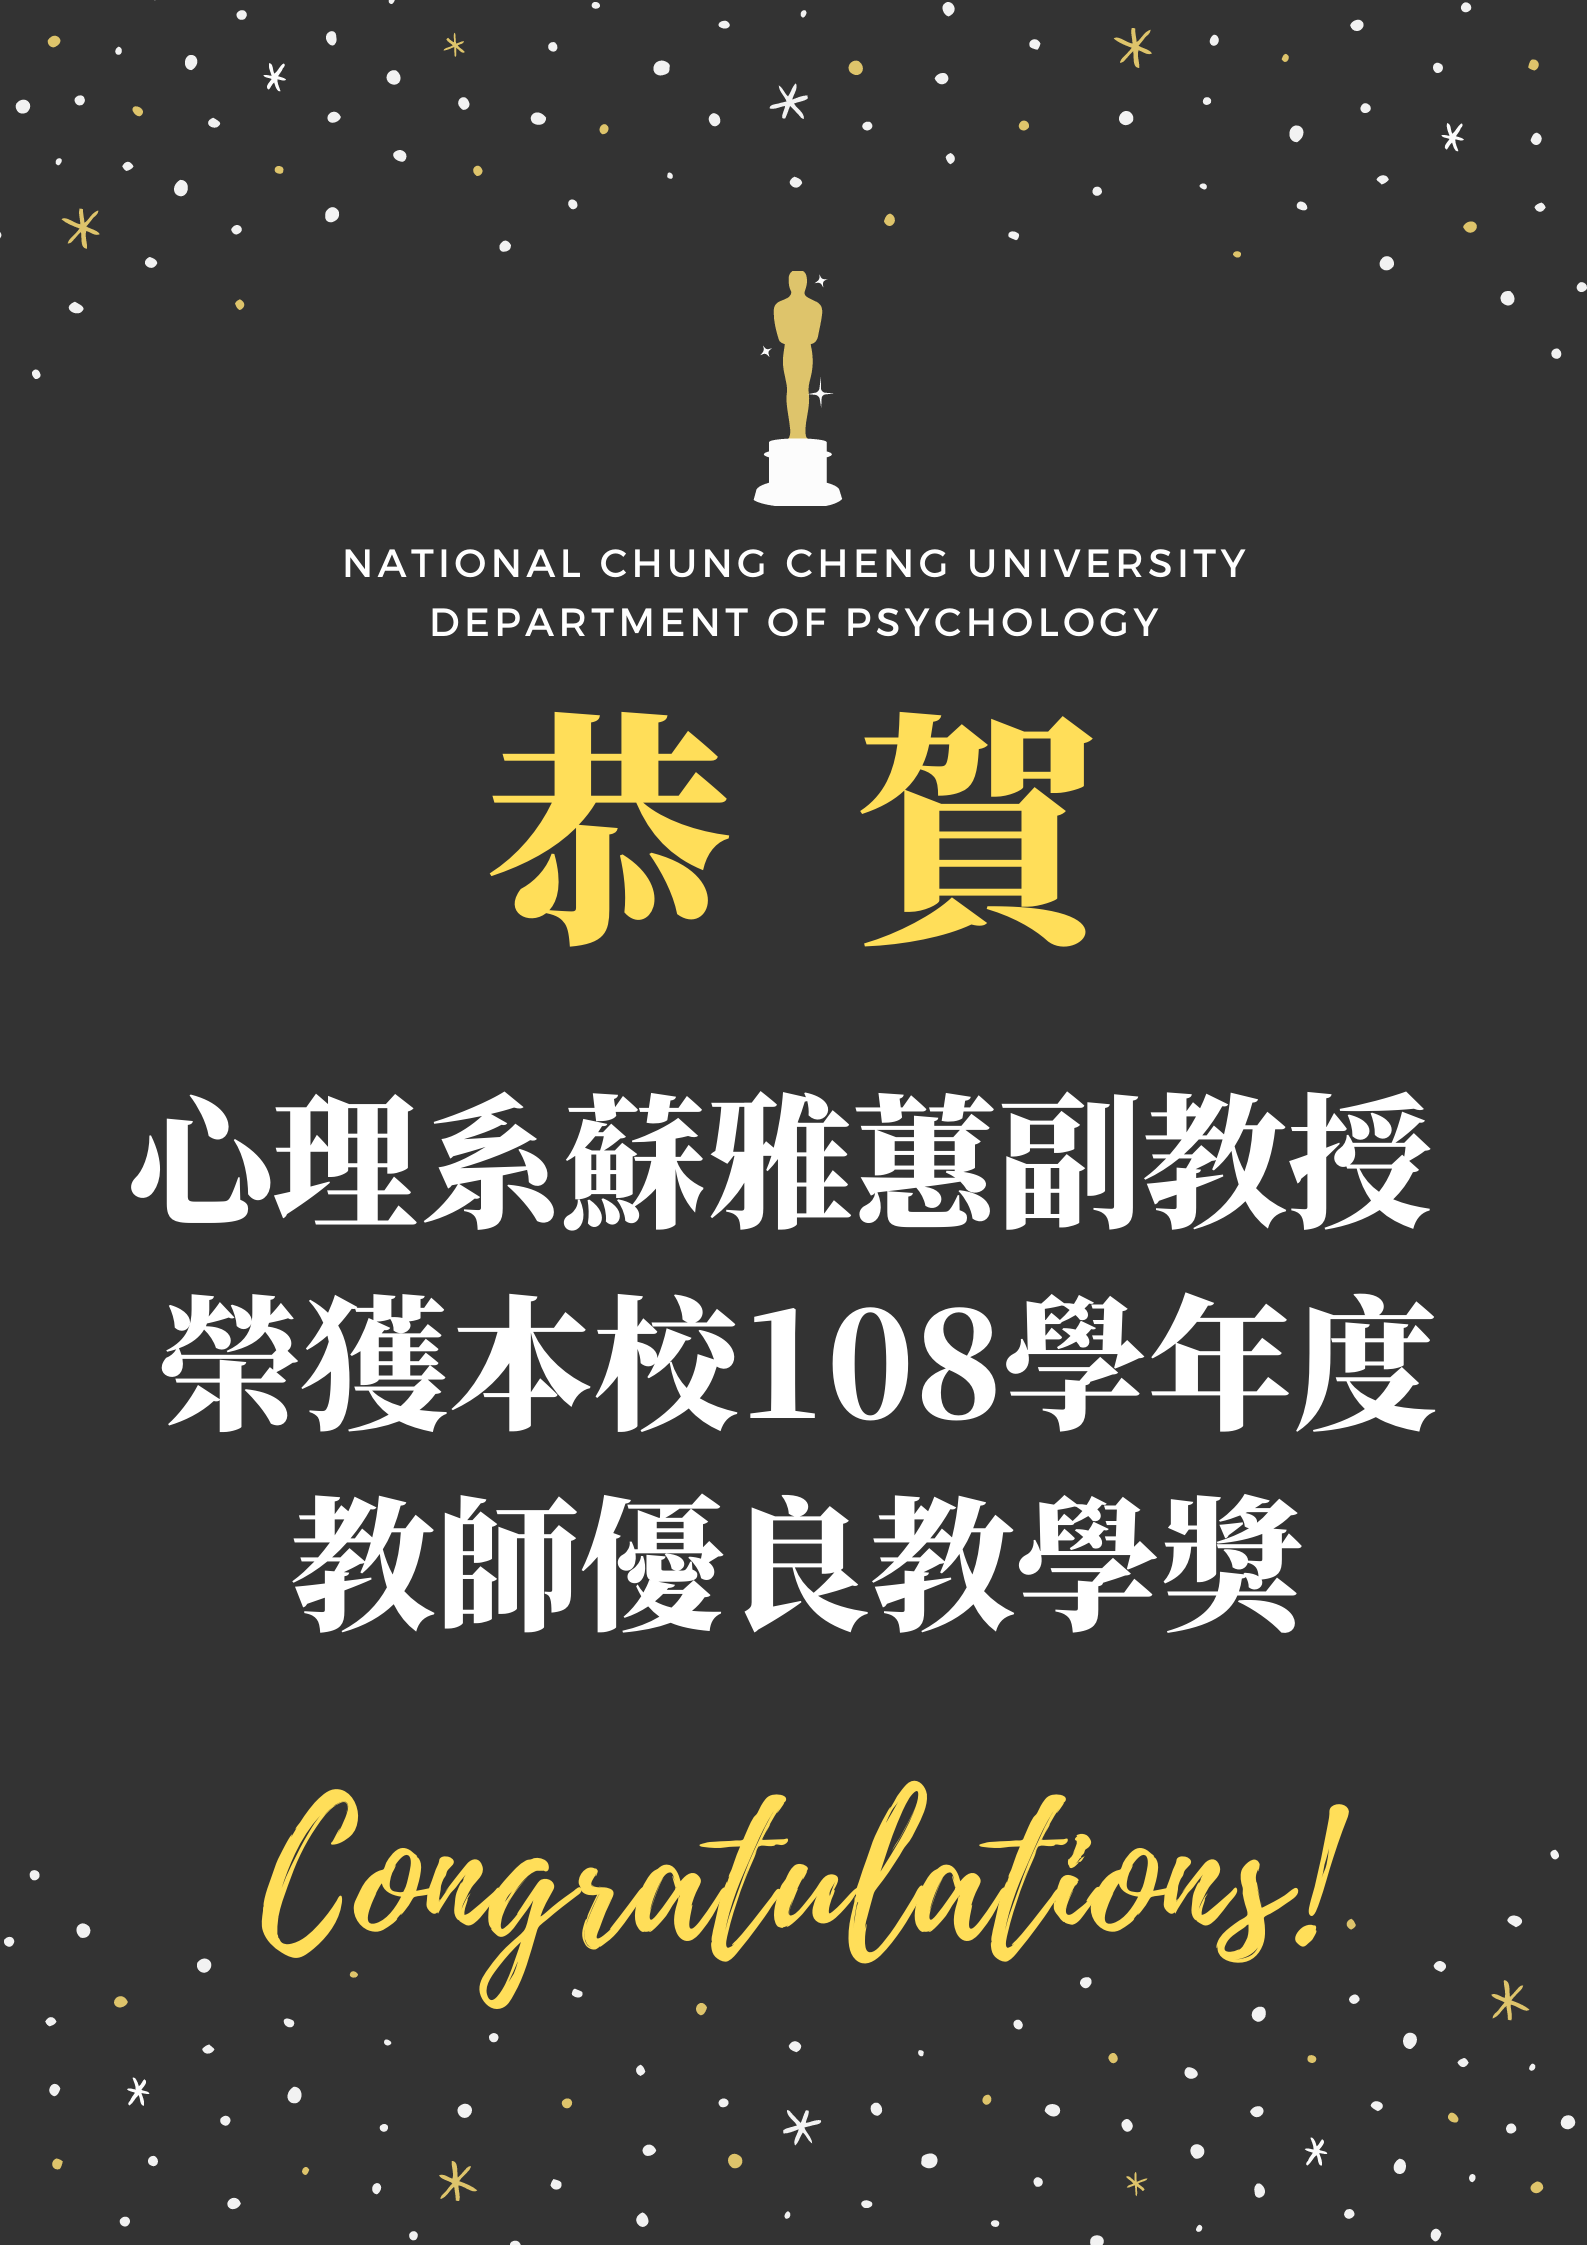 蘇雅蕙副教授 榮獲本校108學年度 教師優良教學獎